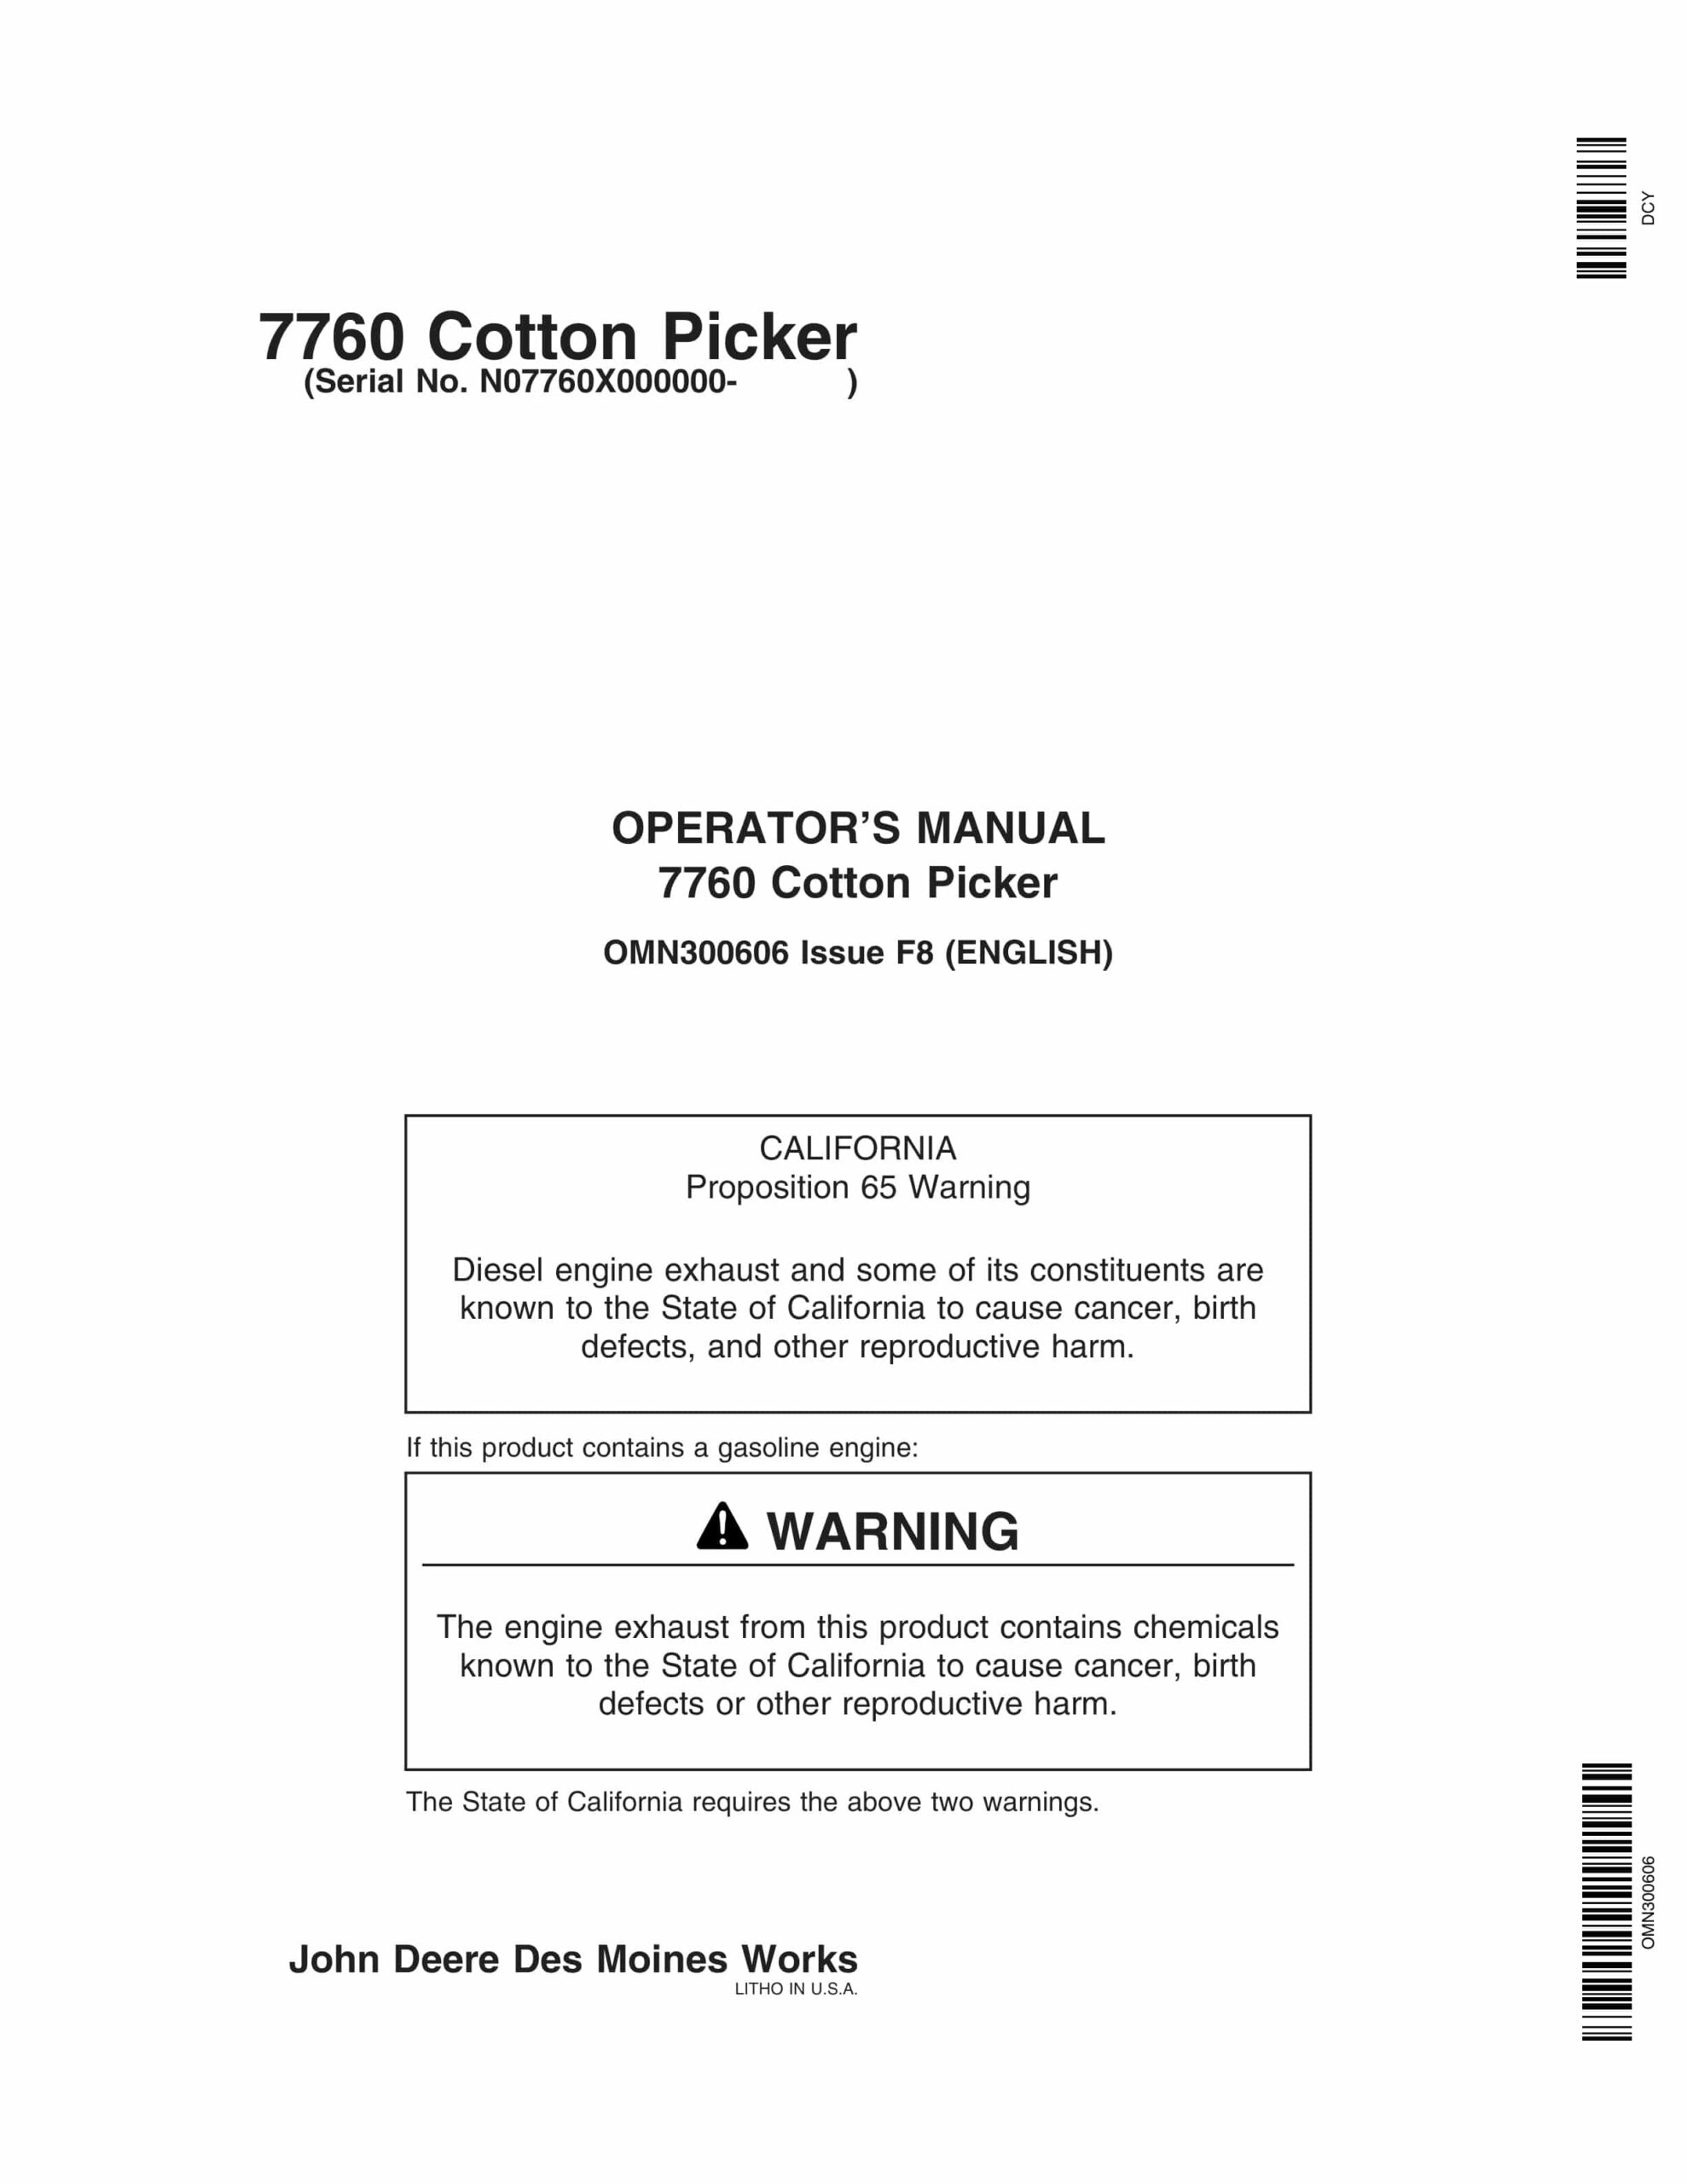 John Deere 7760 Cotton Picker Operator Manual OMN300606-1